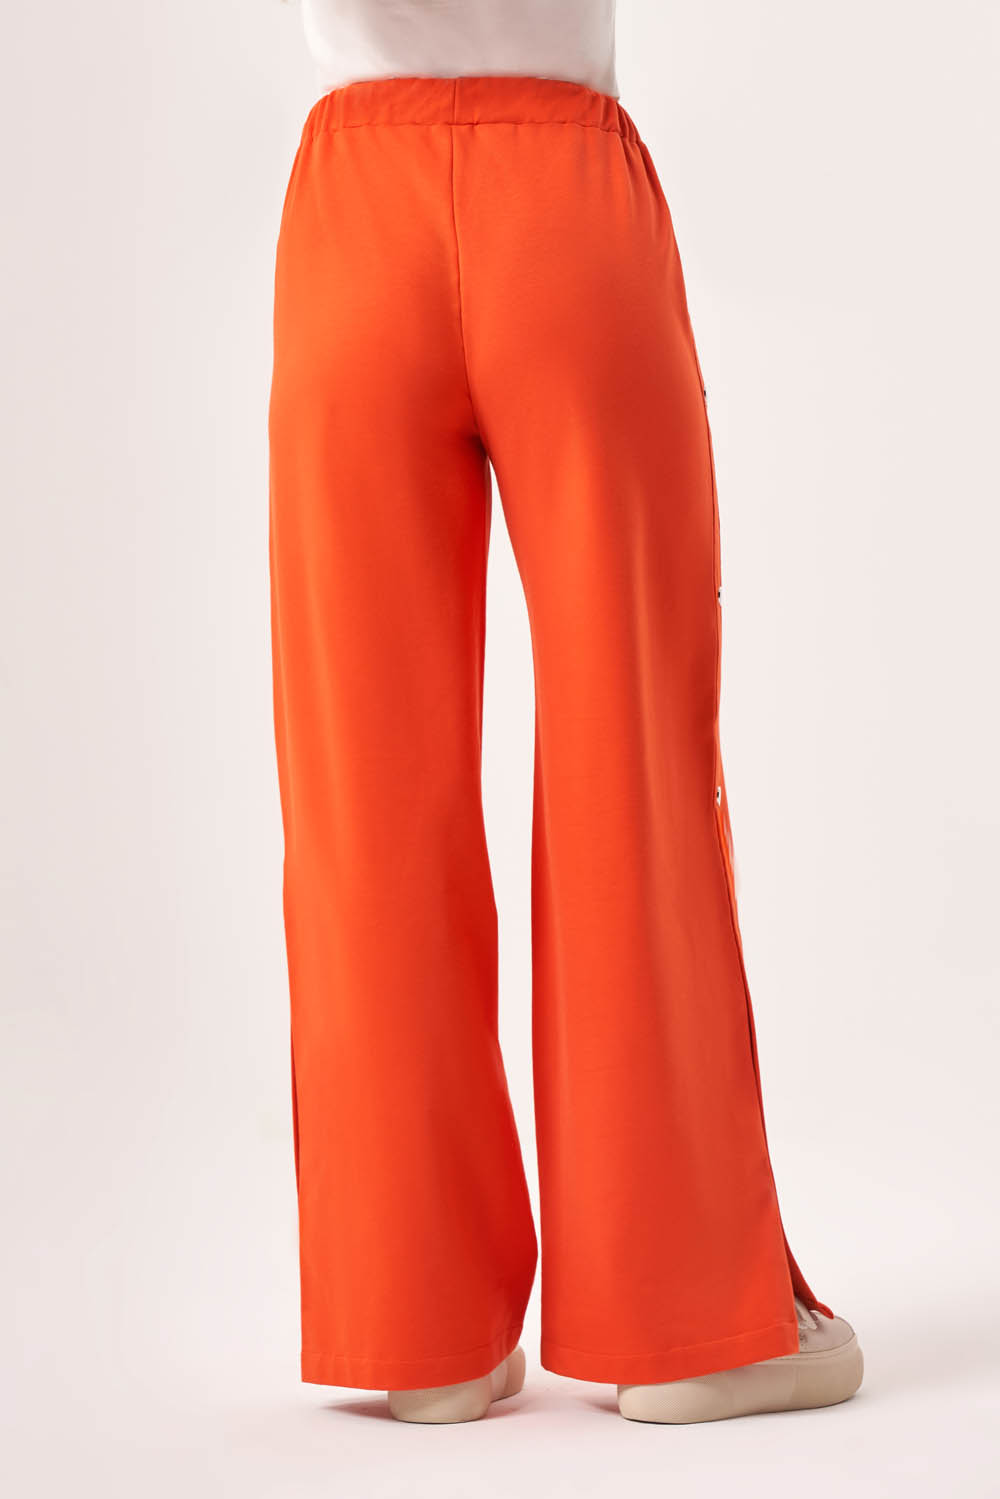 Basic Yan Çıtçıtlı İki İplik Turuncu Pantolon